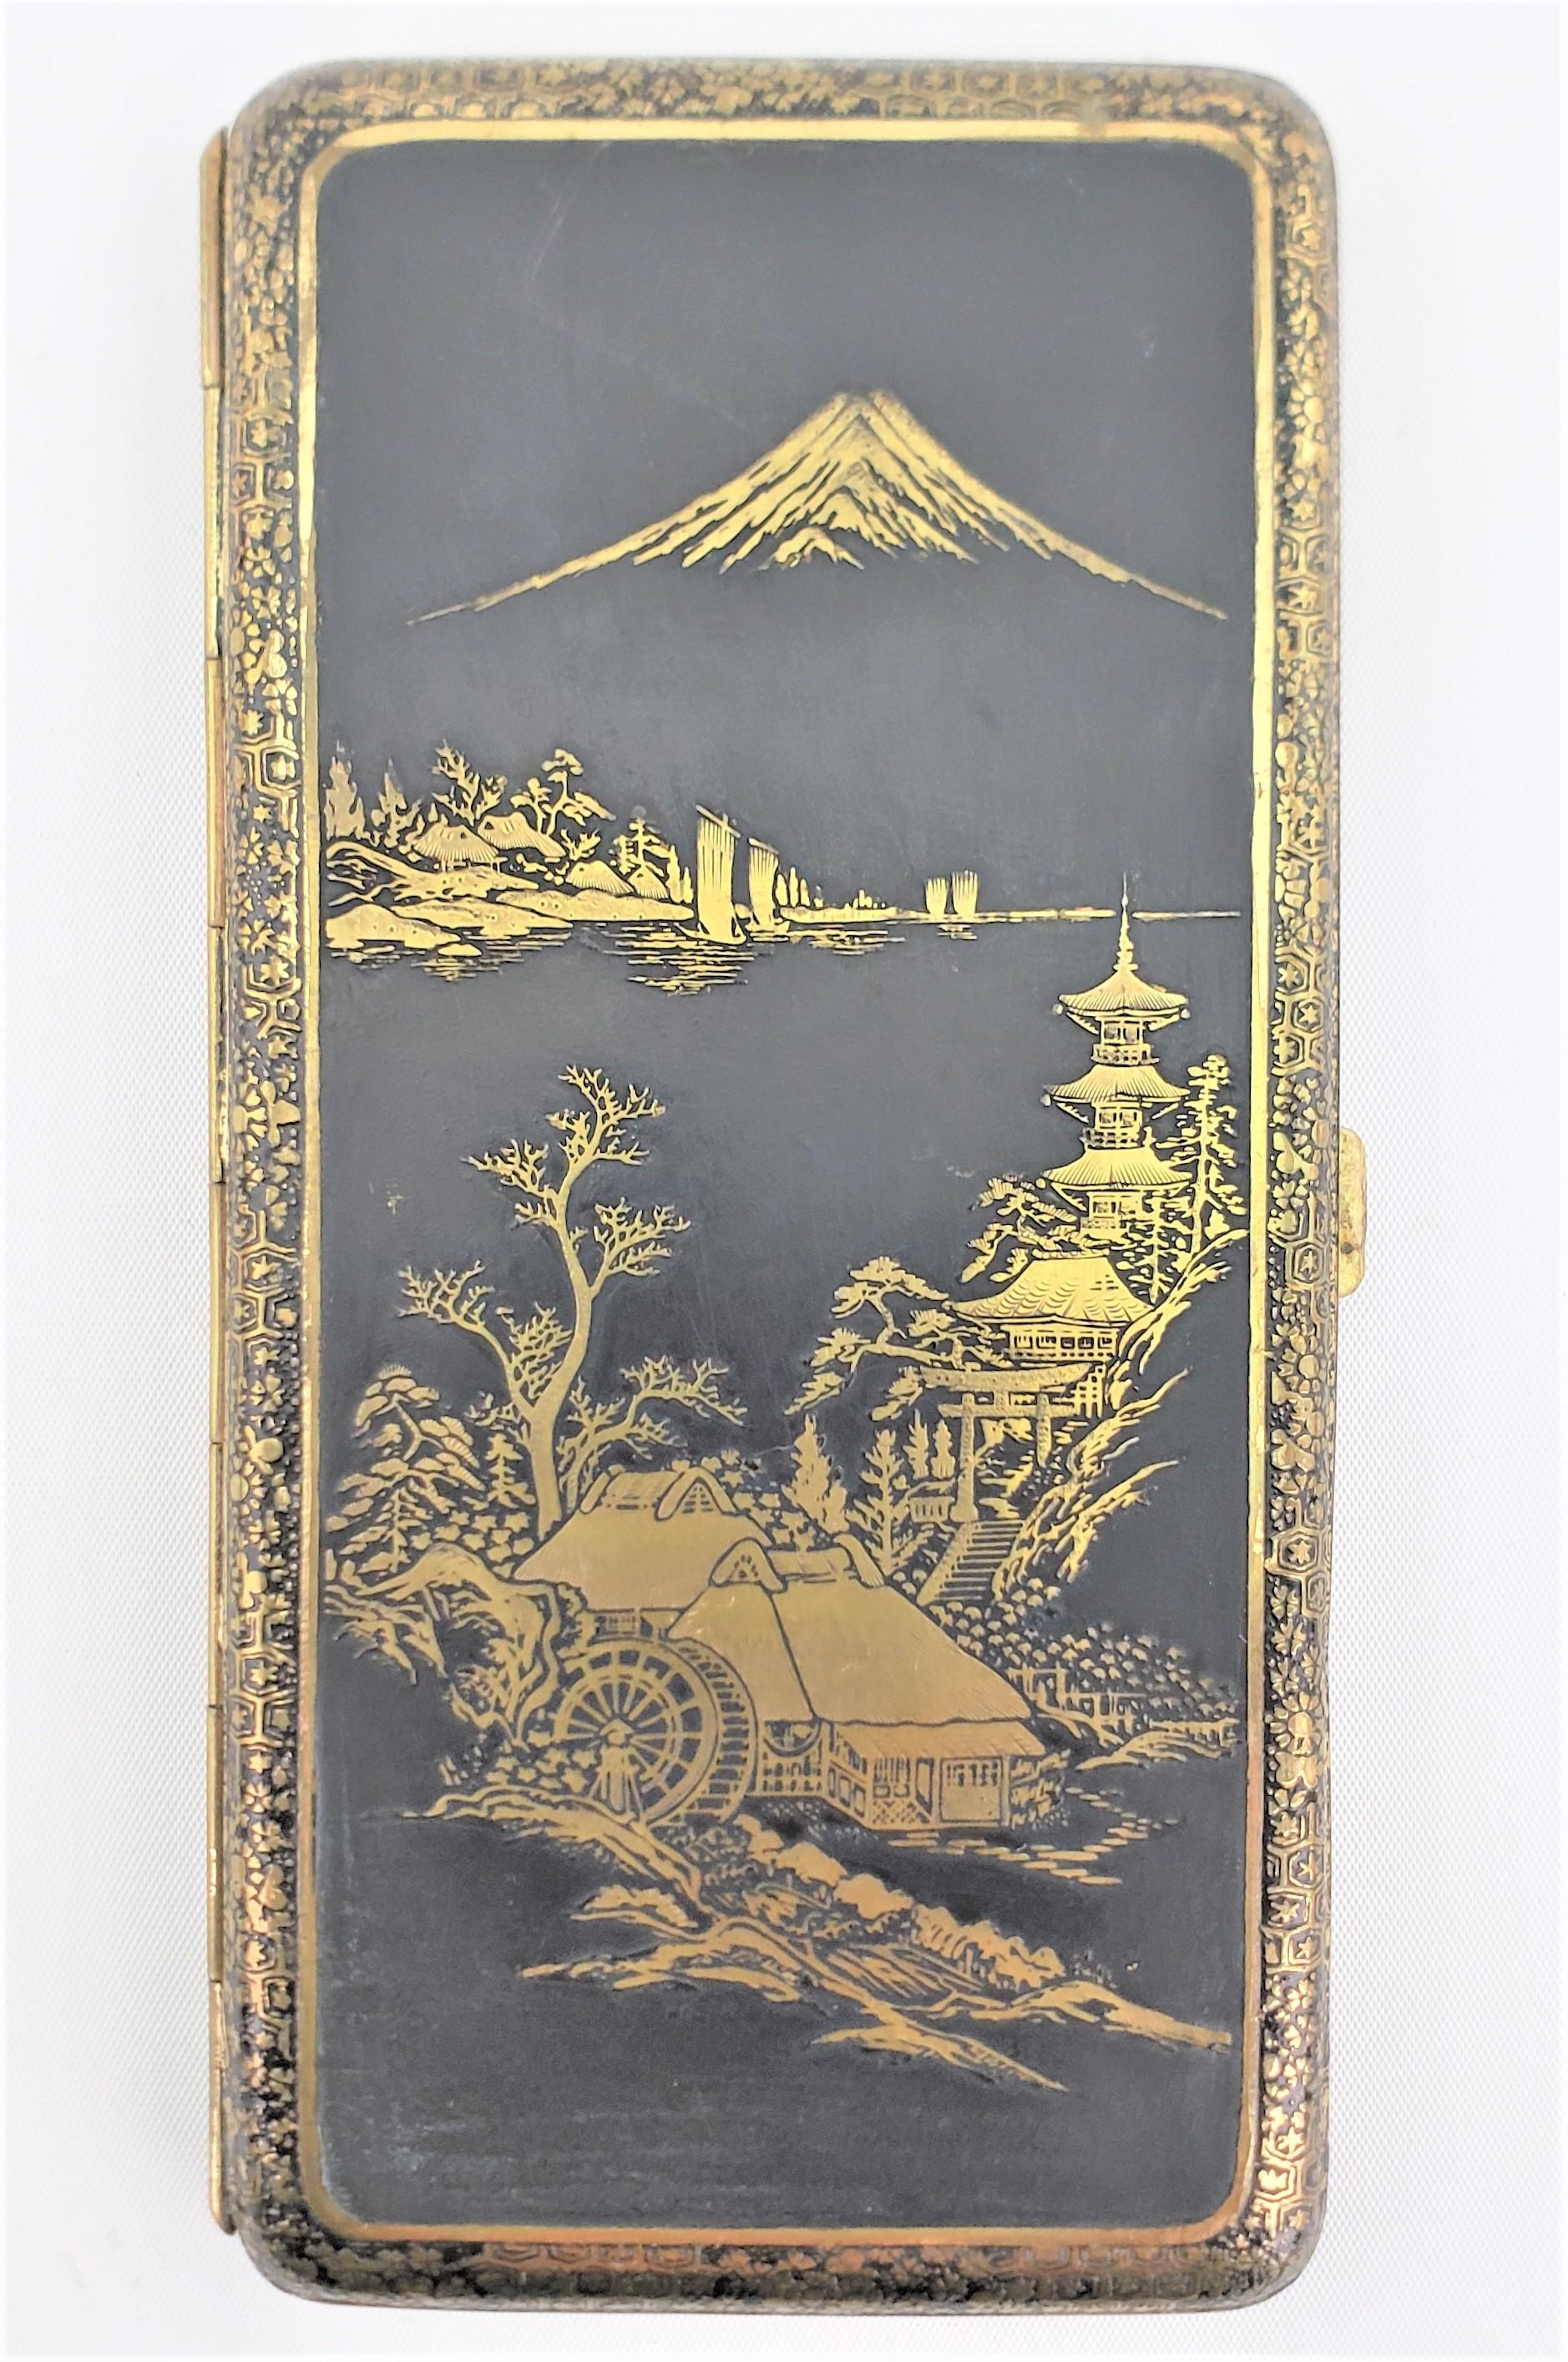 Diese große antike Tabakdose im Damaszenerstil ist unsigniert, stammt aber vermutlich aus Japan und wurde um 1920 im anglo-japanischen Stil hergestellt. Das Gehäuse besteht aus Metall, das auf der Vorderseite kunstvoll mit einer japanischen